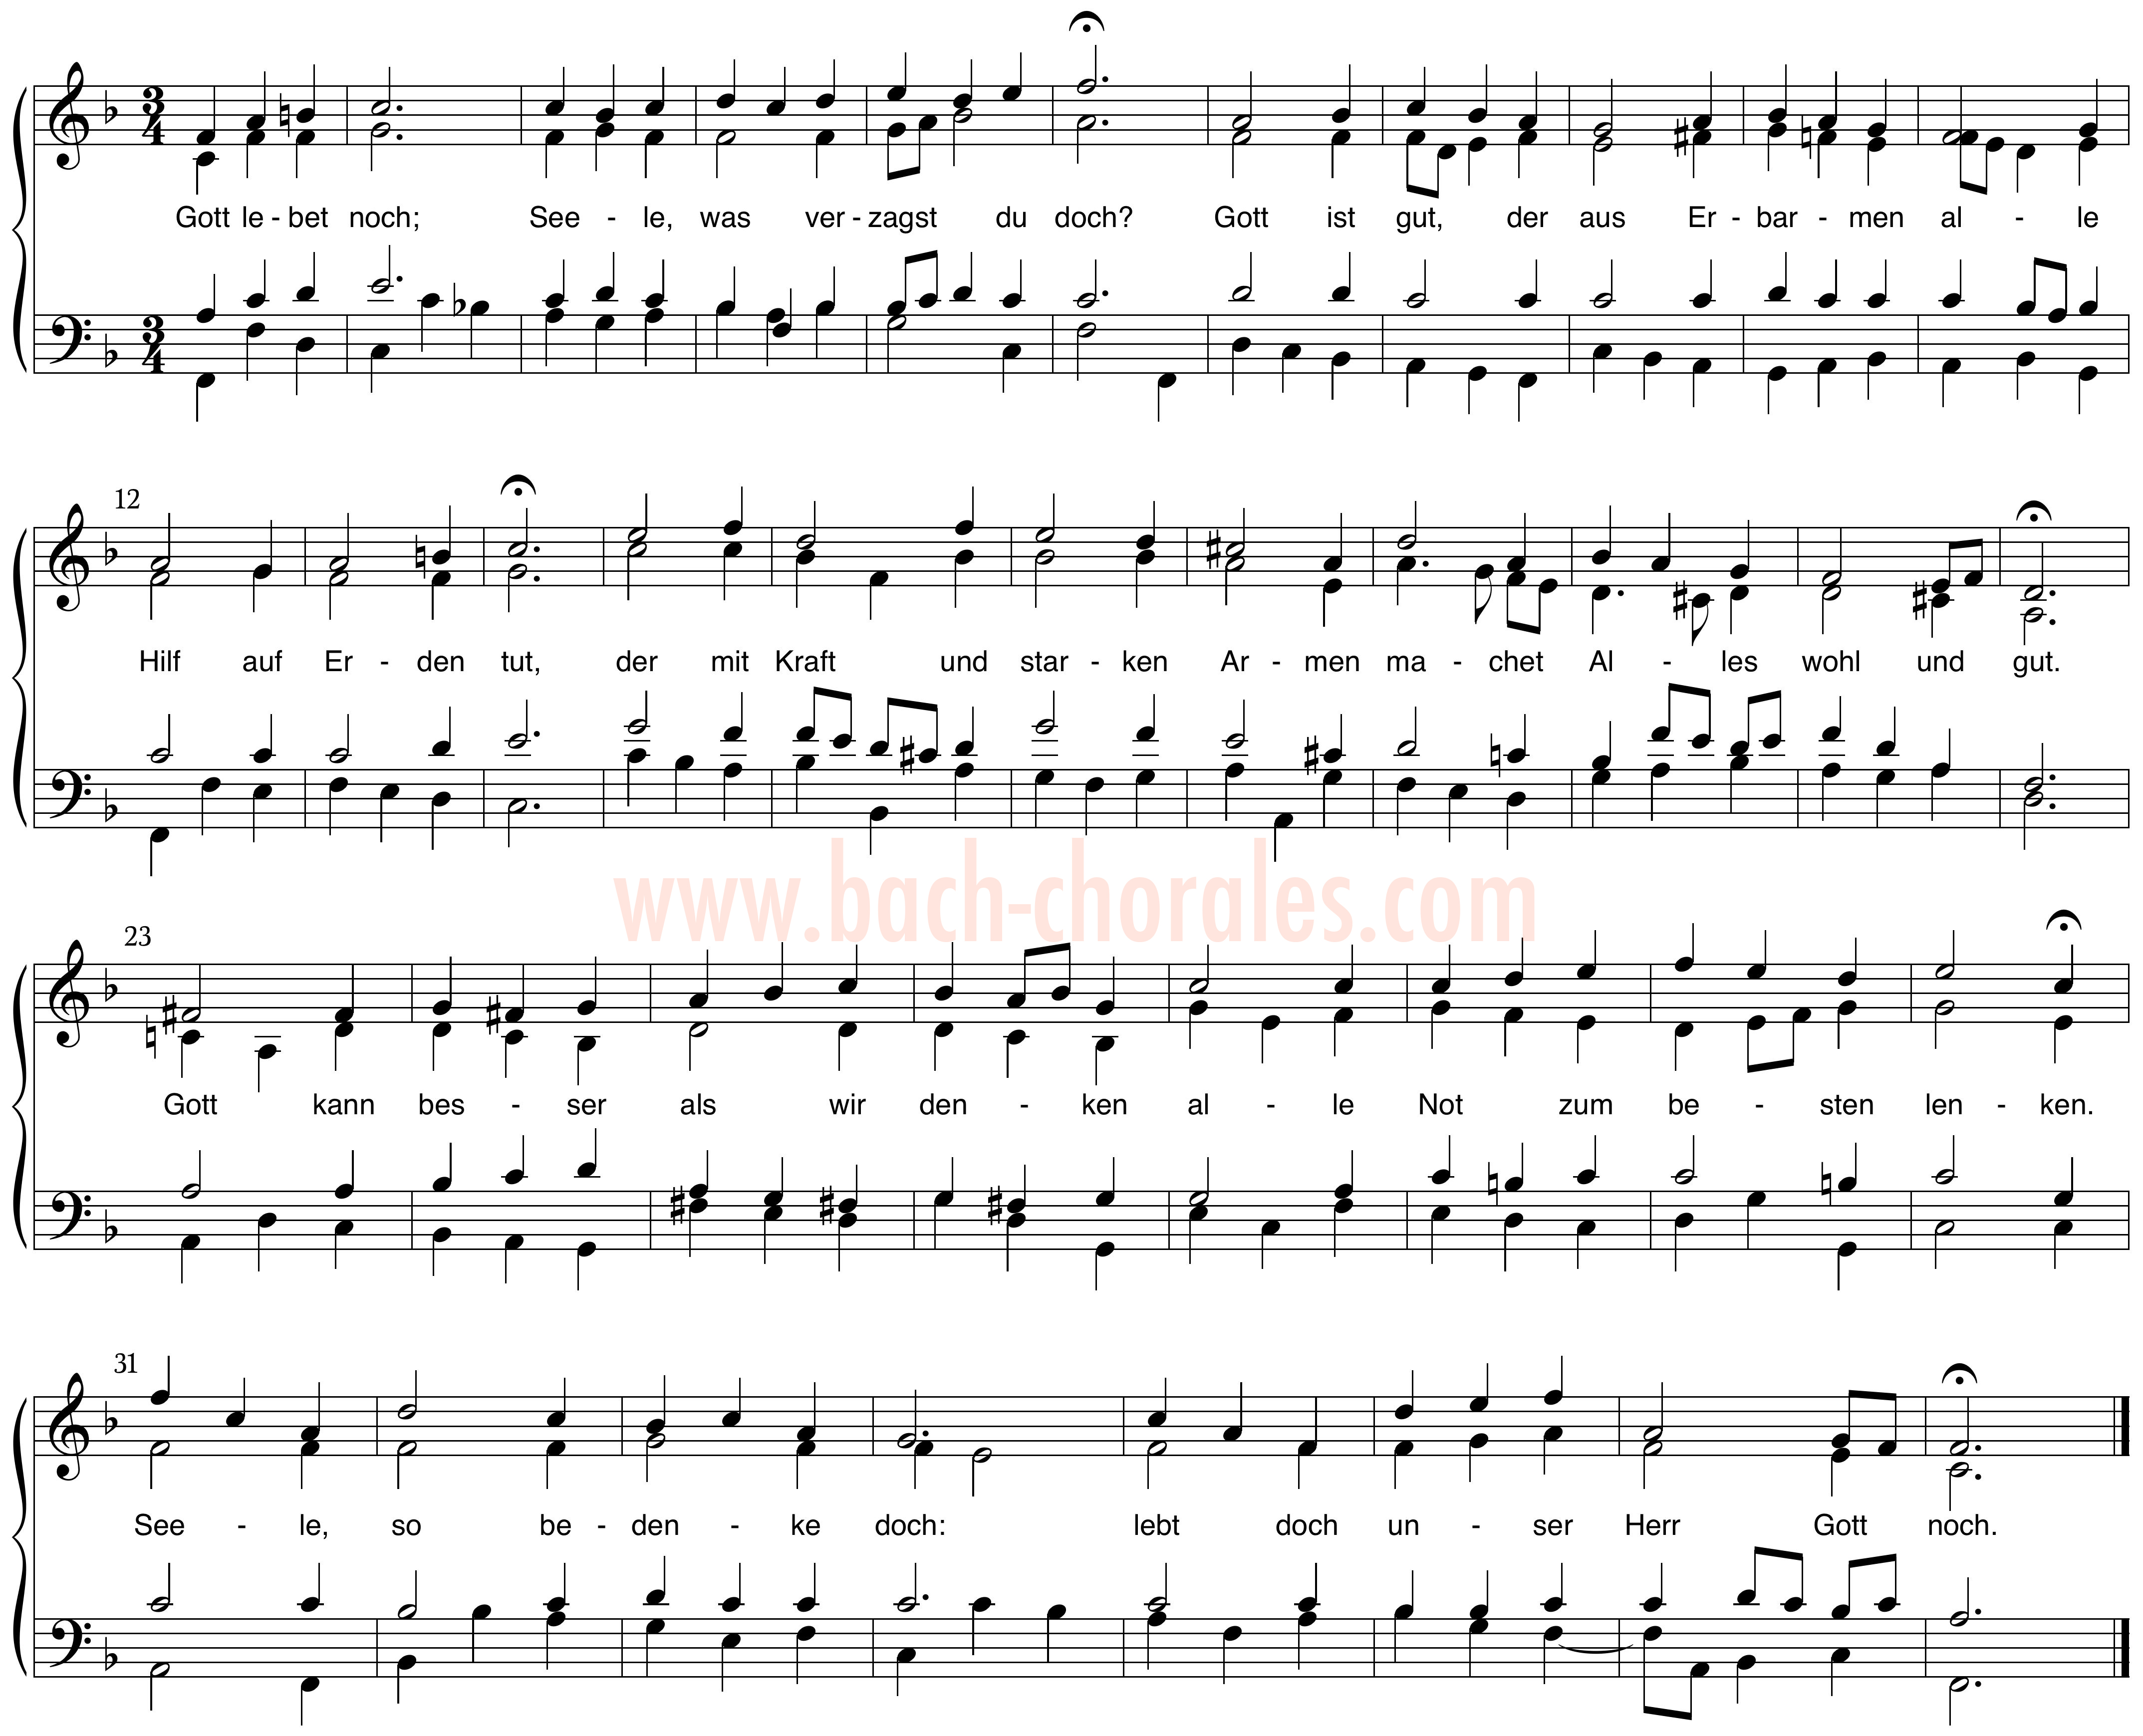 notenbeeld BWV 320 op https://www.bach-chorales.com/